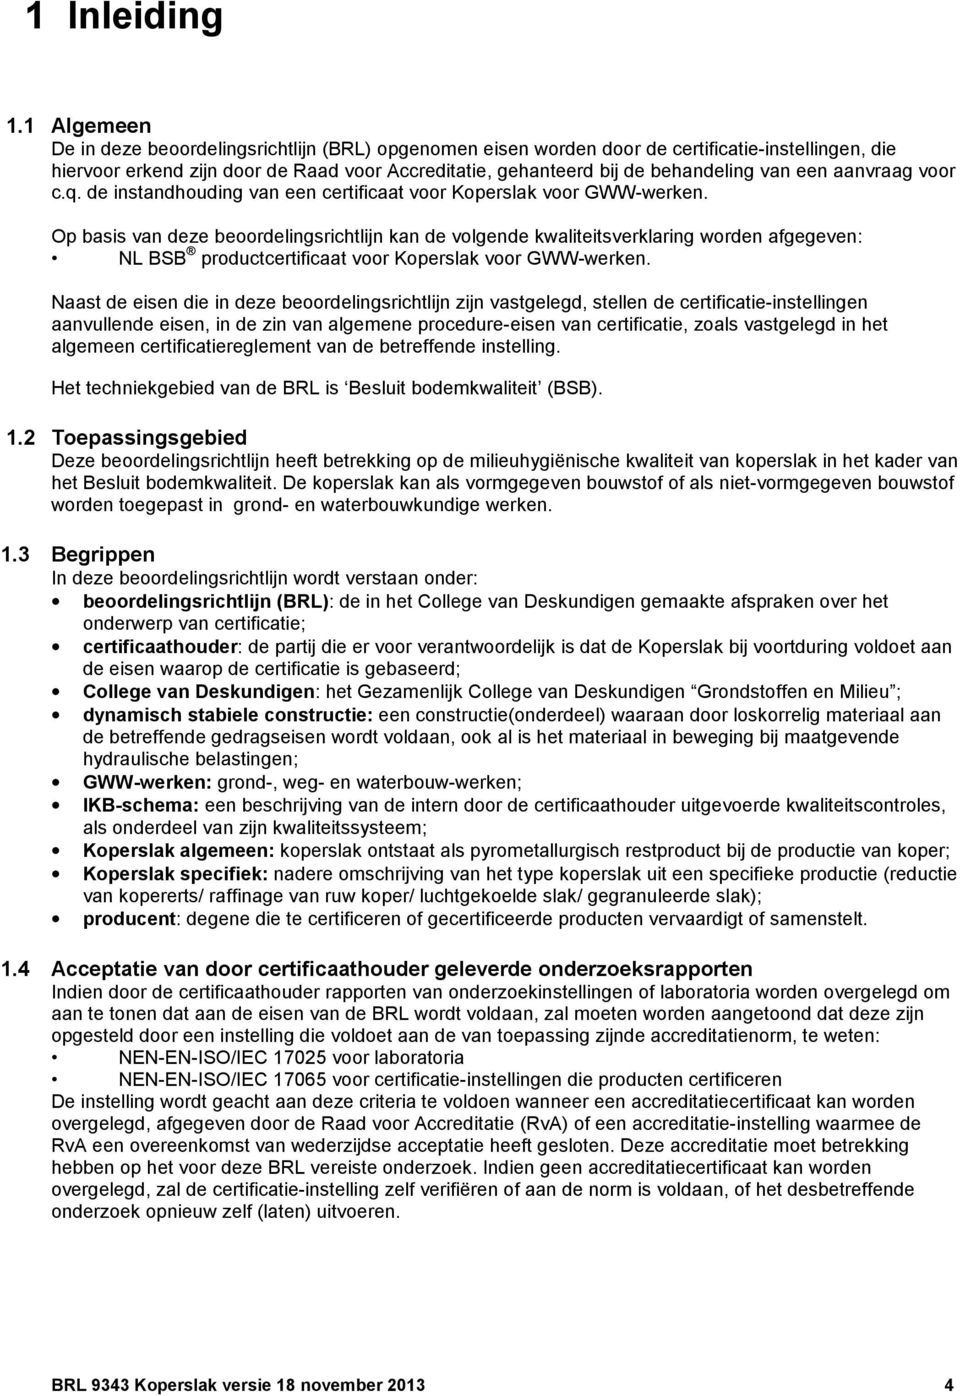 een aanvraag voor c.q. de instandhouding van een certificaat voor Koperslak voor GWW-werken.